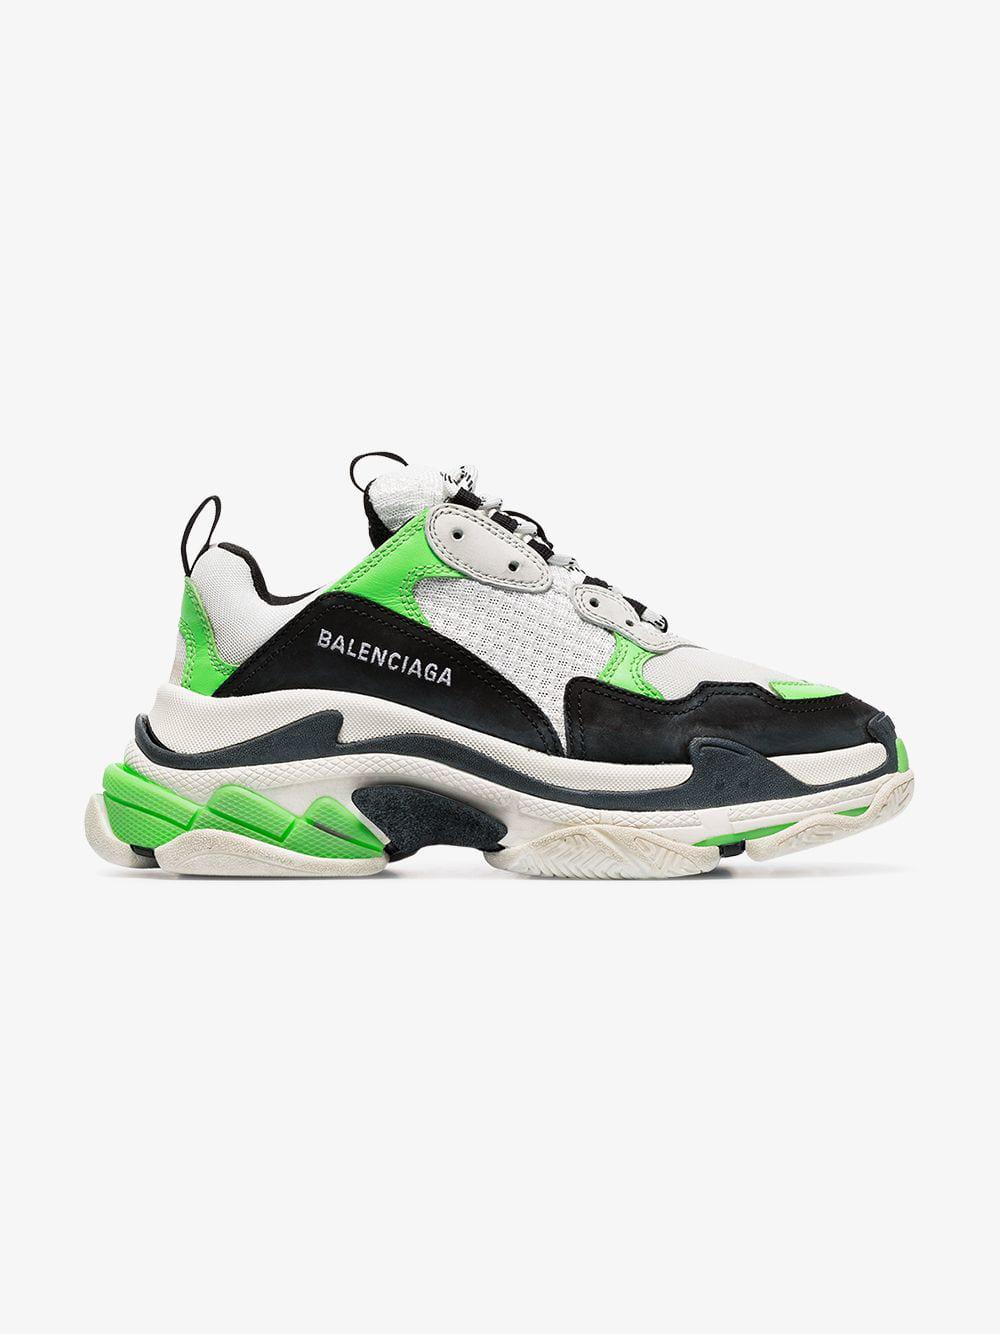 balenciaga sneakers black and green